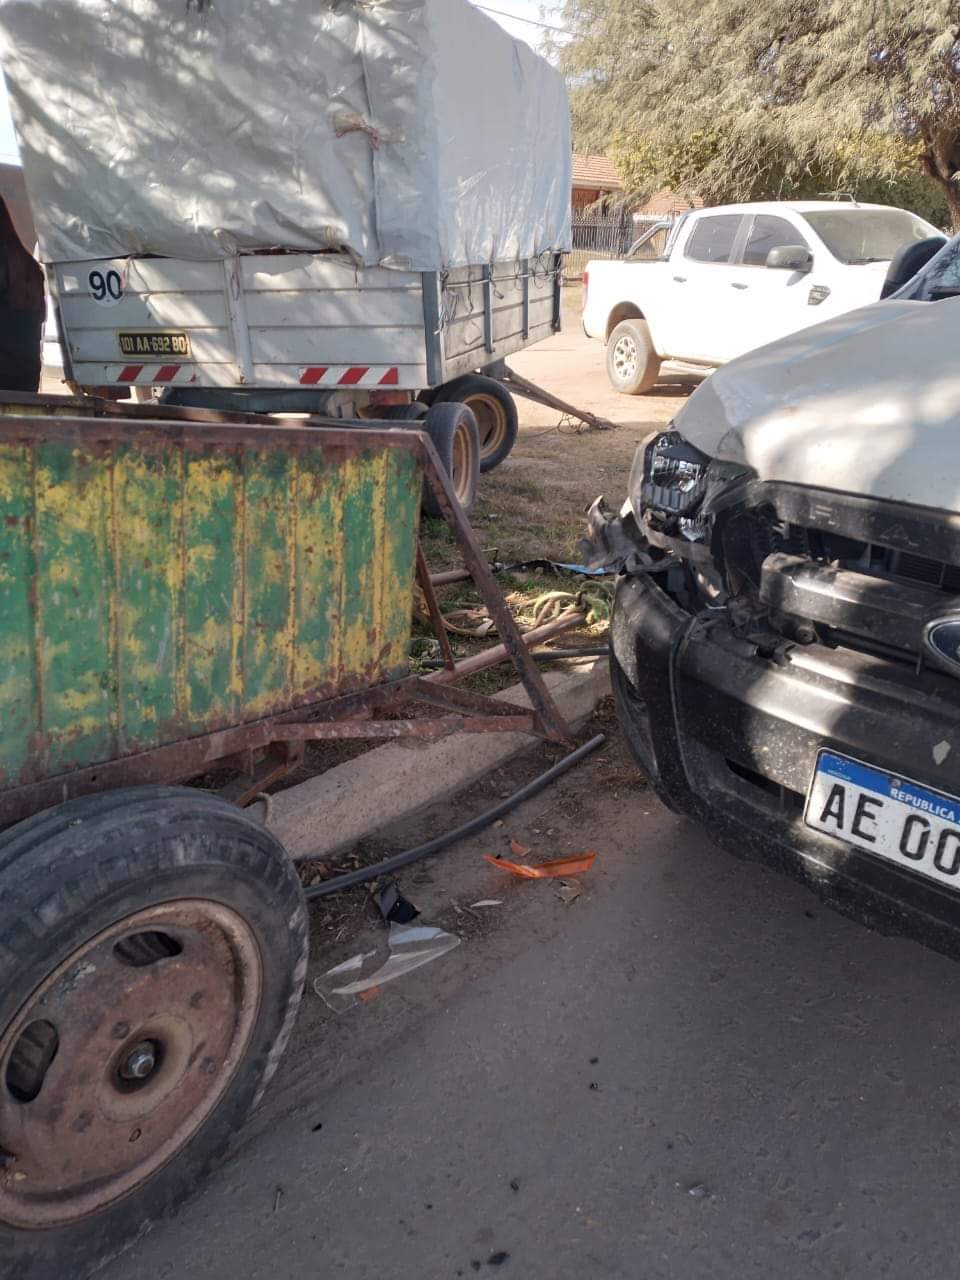 Peligro en la calle: Se desbocó un caballo de un carro y embistió a un auto